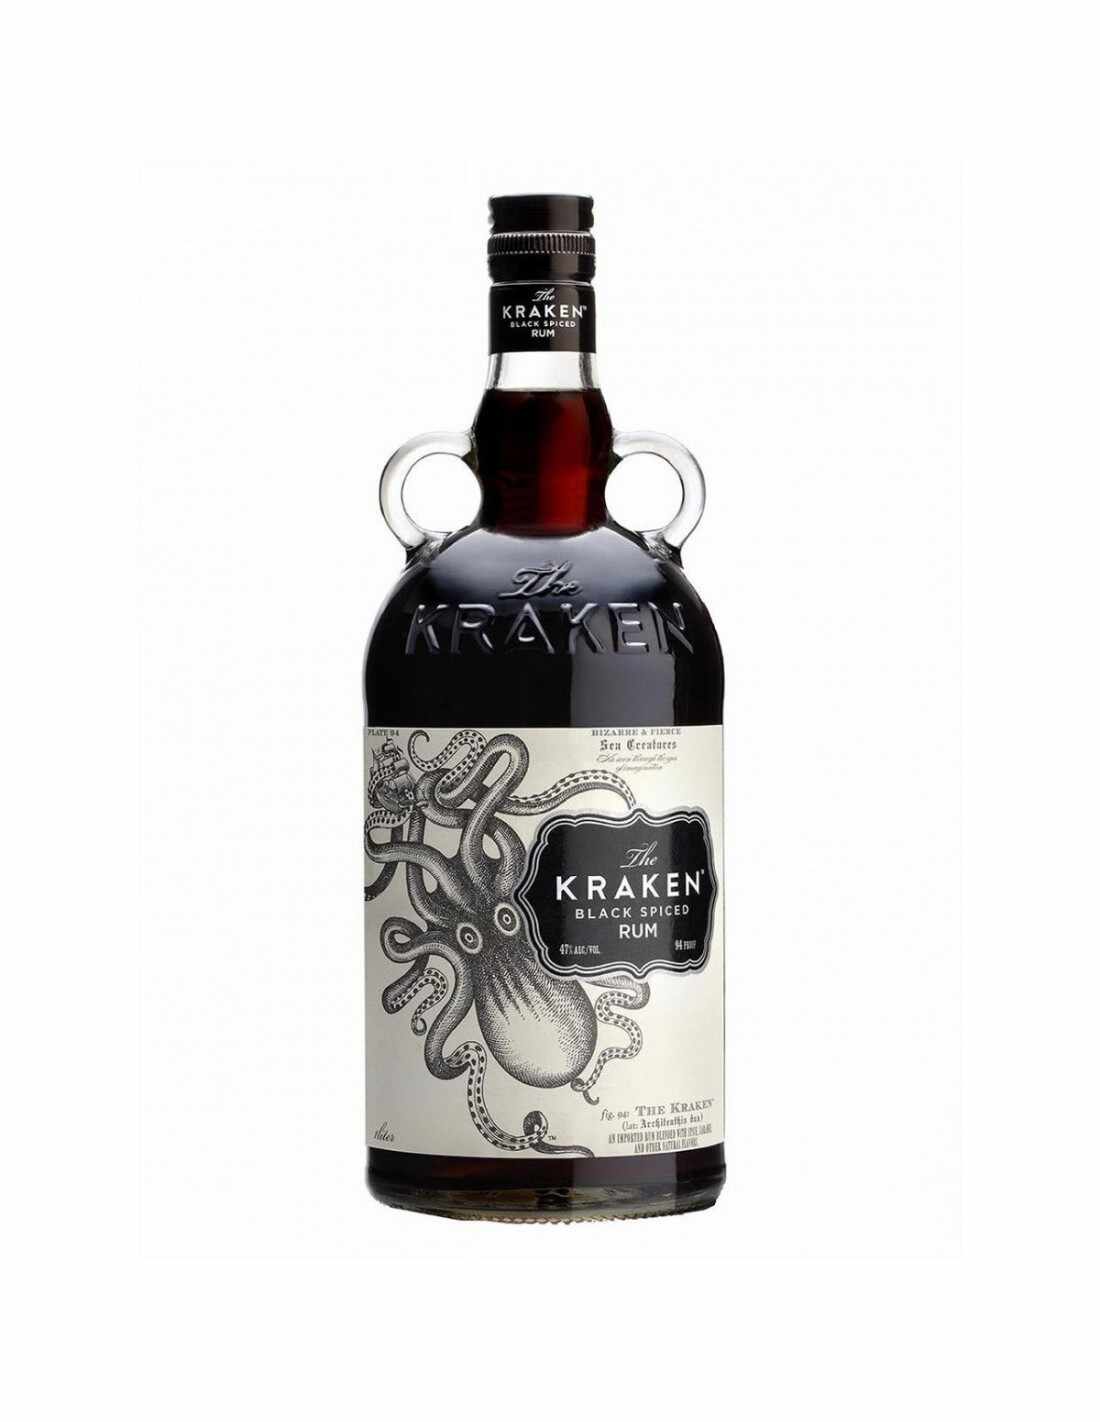 Rom Kraken Black Spiced Rum, 40% alc., 0.7L, Caraibe